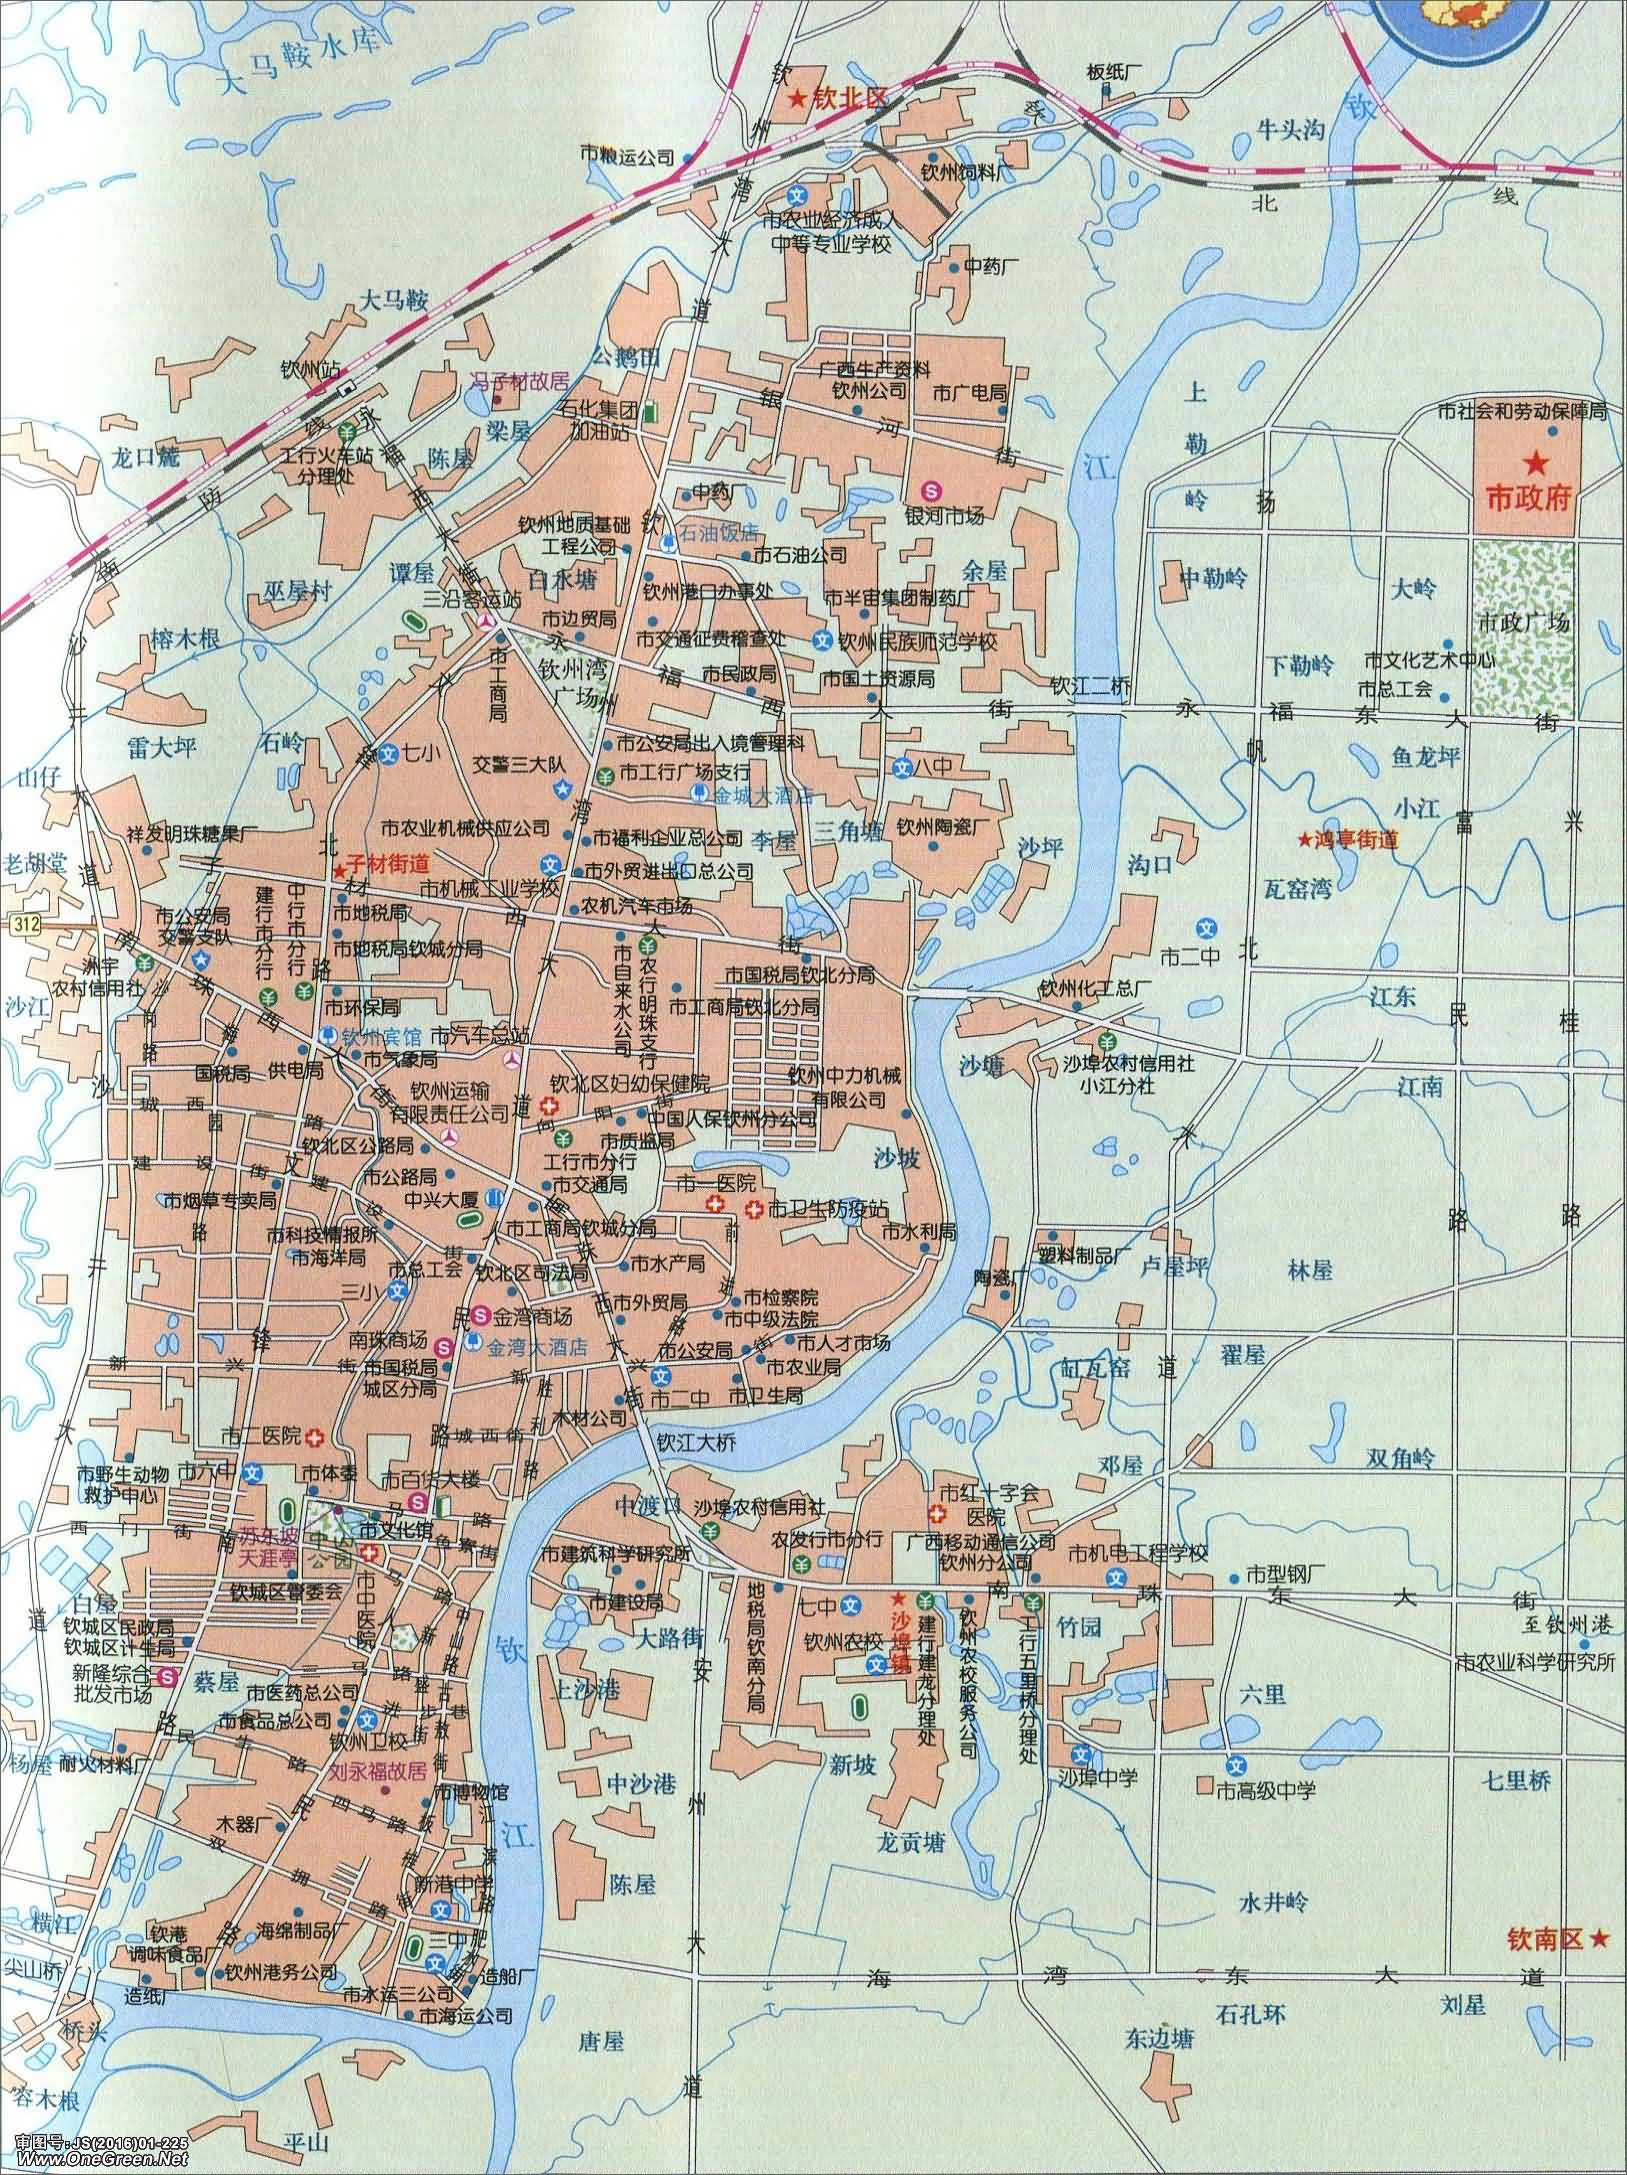 防城港  钦州  贵港  玉林  百色  河池  来宾  崇左 上一张地图: 钦图片